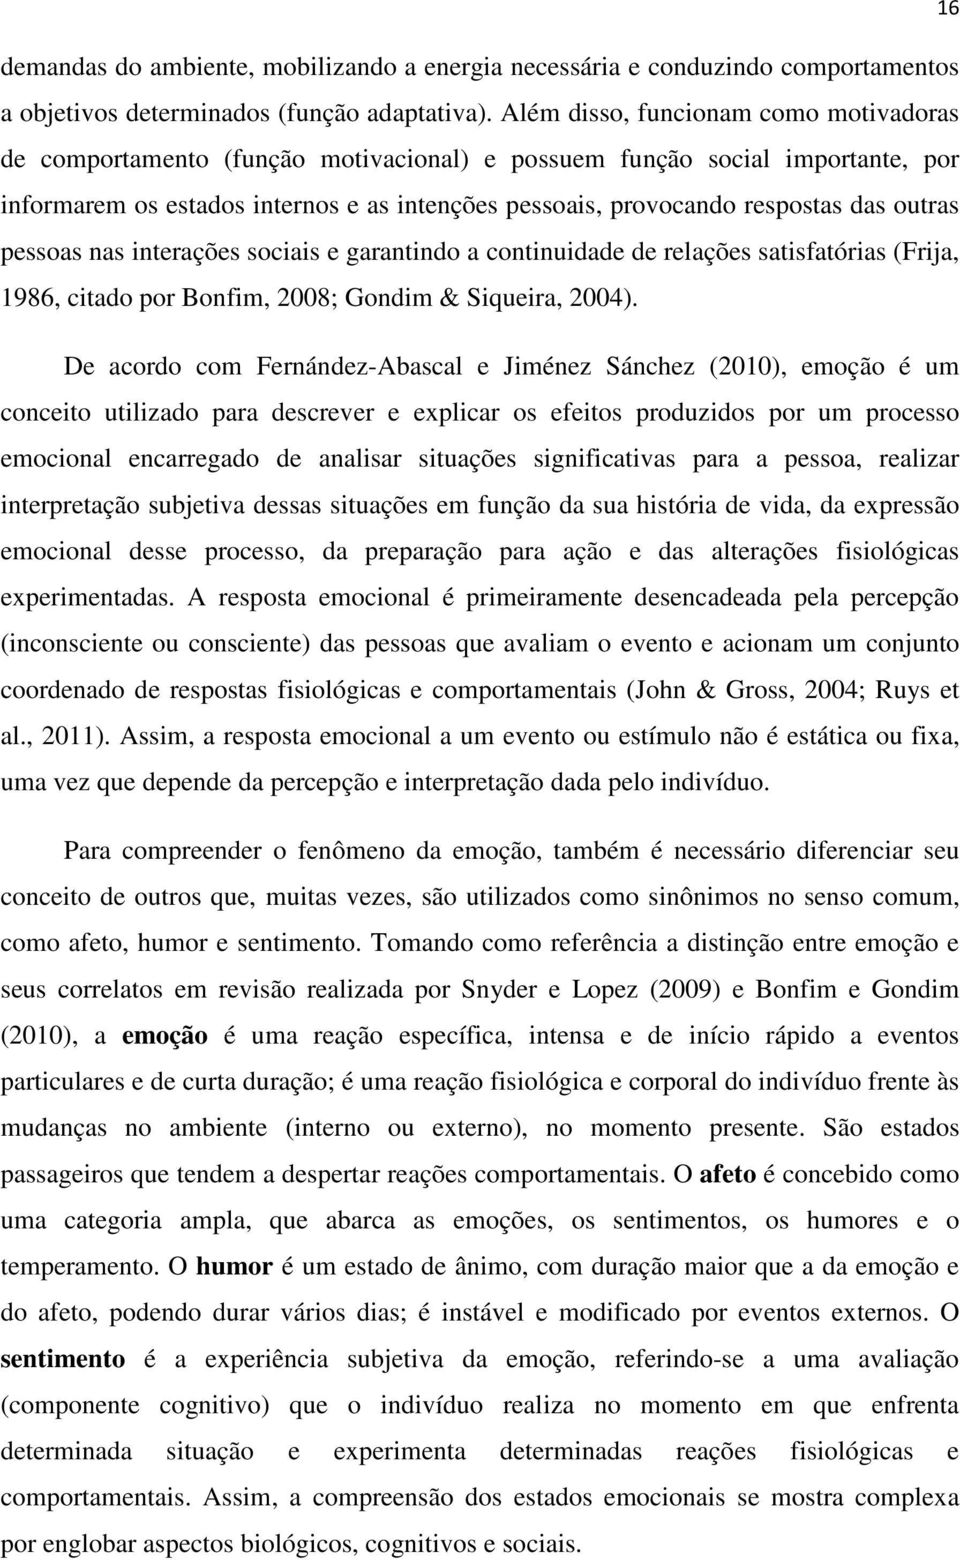 outras pessoas nas interações sociais e garantindo a continuidade de relações satisfatórias (Frija, 1986, citado por Bonfim, 2008; Gondim & Siqueira, 2004).